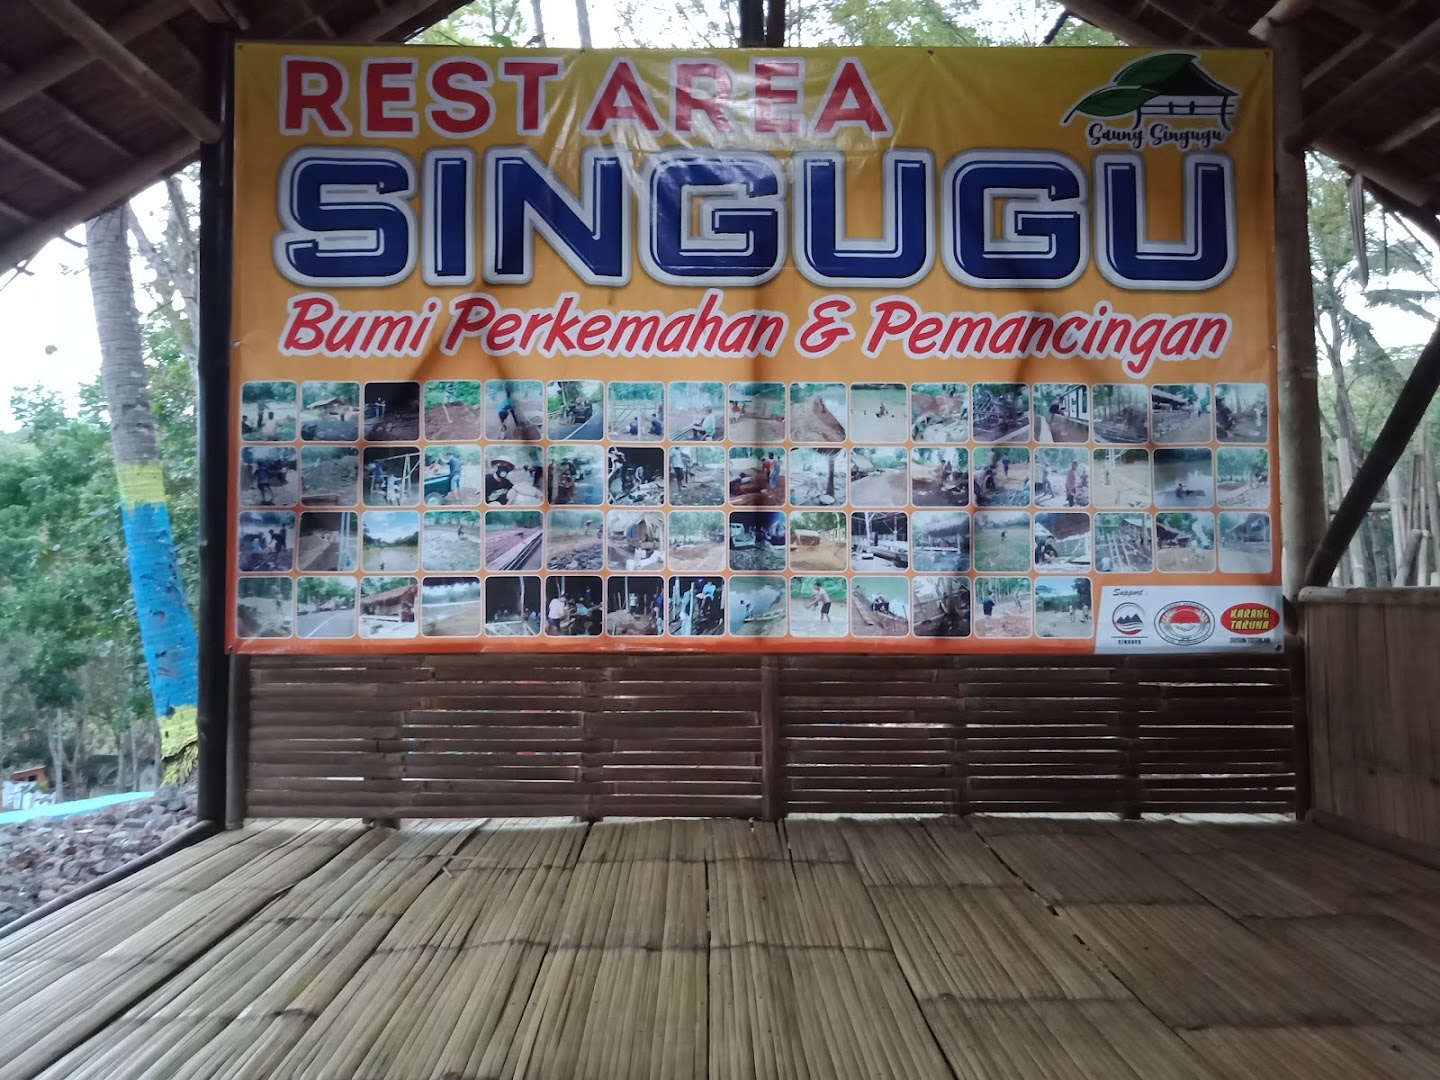 Gambar Rest Area Singugu